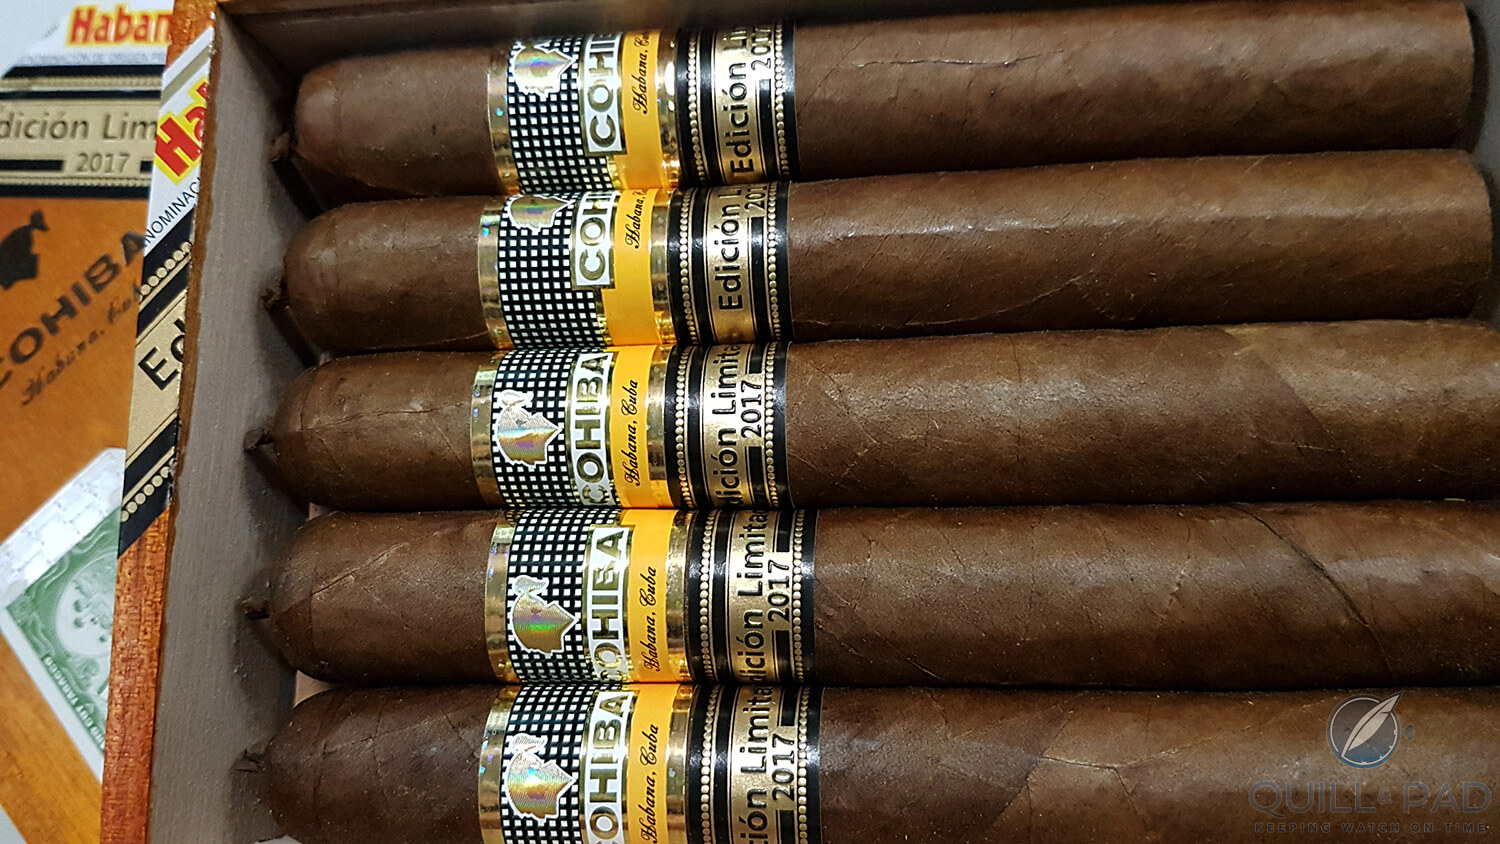 Cohiba Talismán Limited Edition 2017 cigars